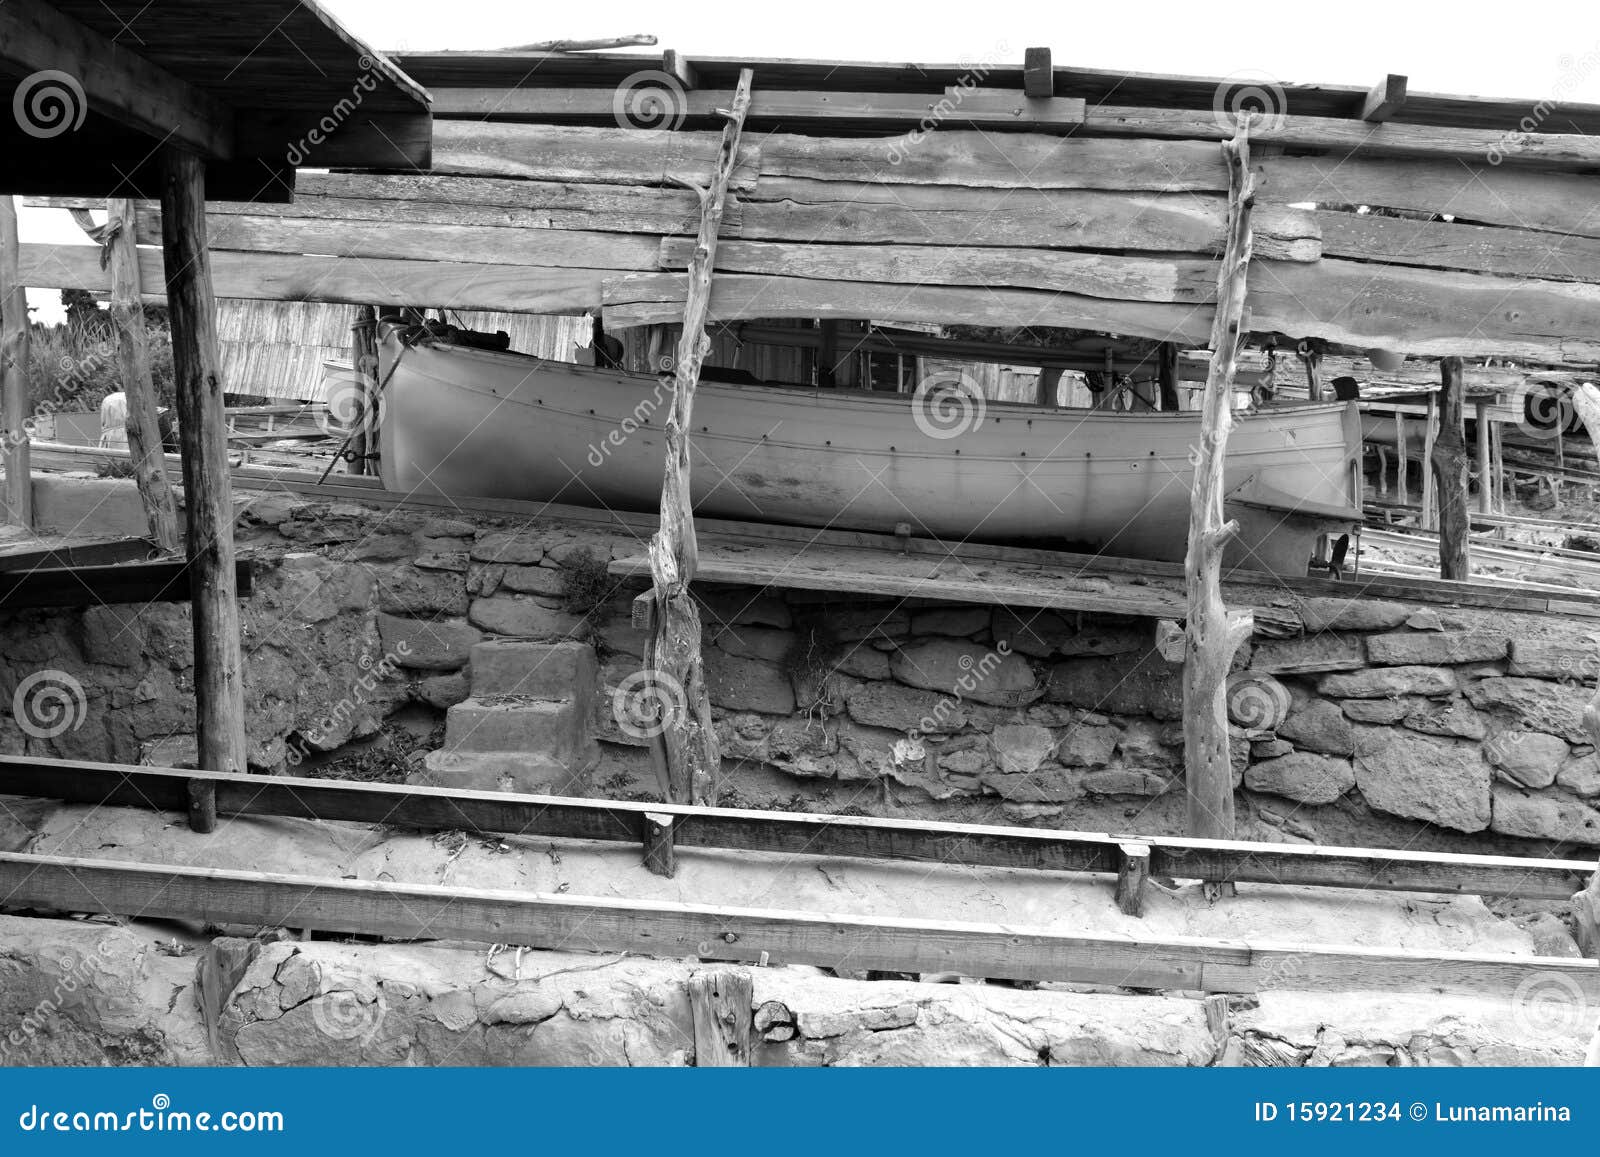 escalo formentera boat stranded wooden rails